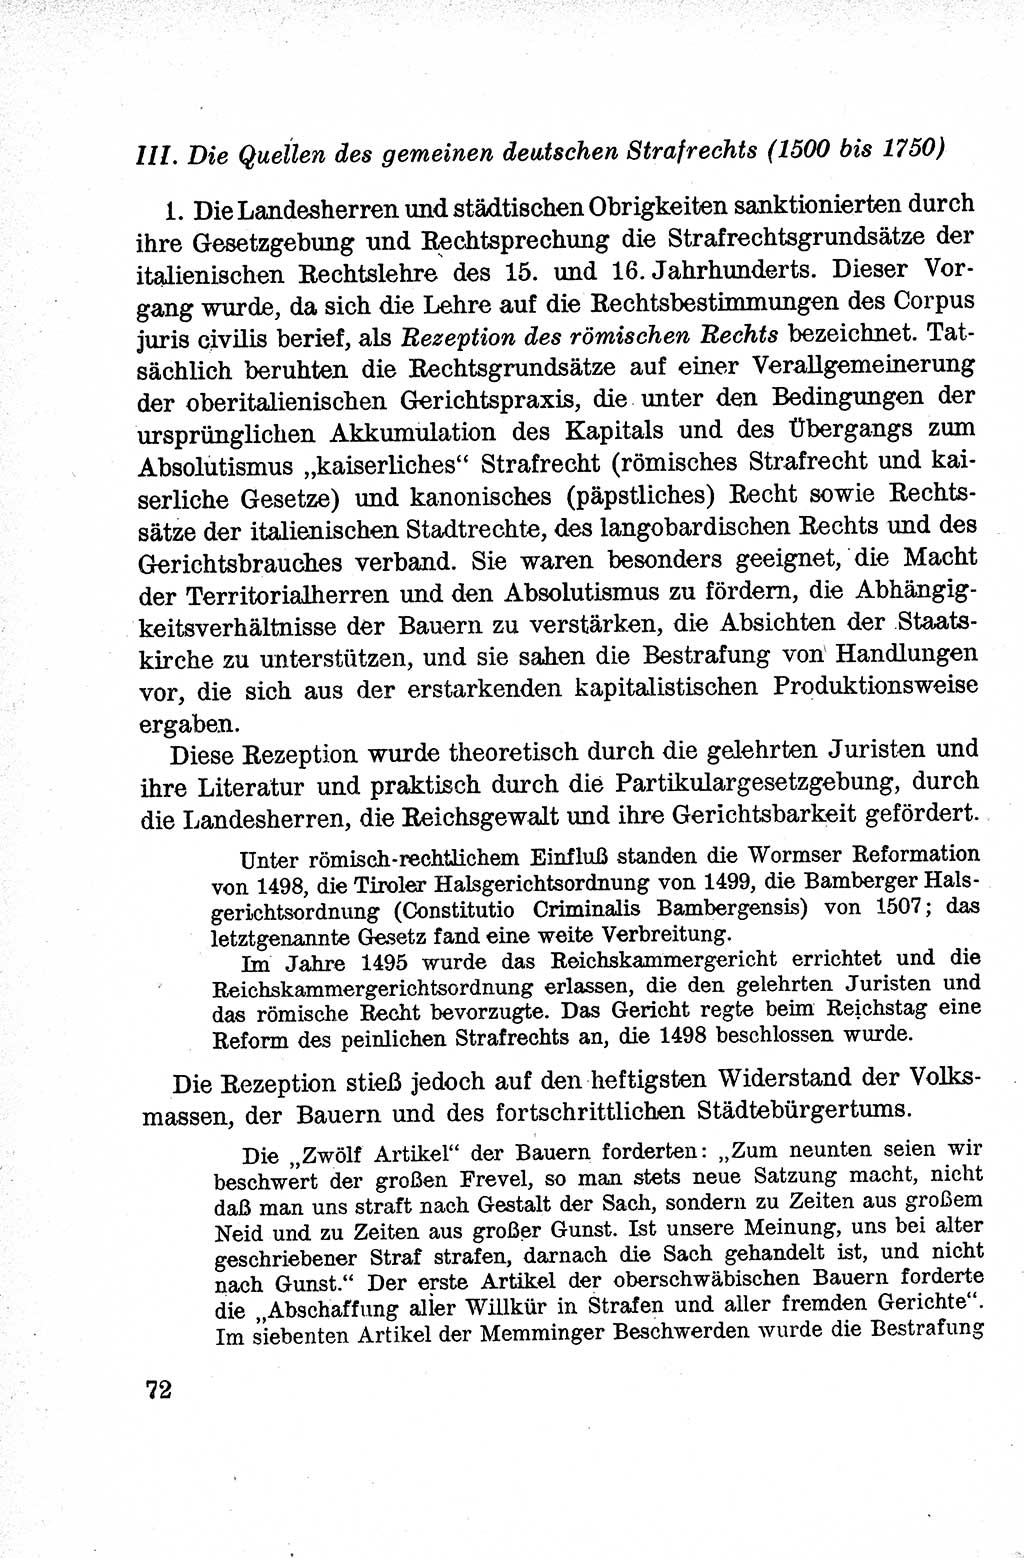 Lehrbuch des Strafrechts der Deutschen Demokratischen Republik (DDR), Allgemeiner Teil 1959, Seite 72 (Lb. Strafr. DDR AT 1959, S. 72)